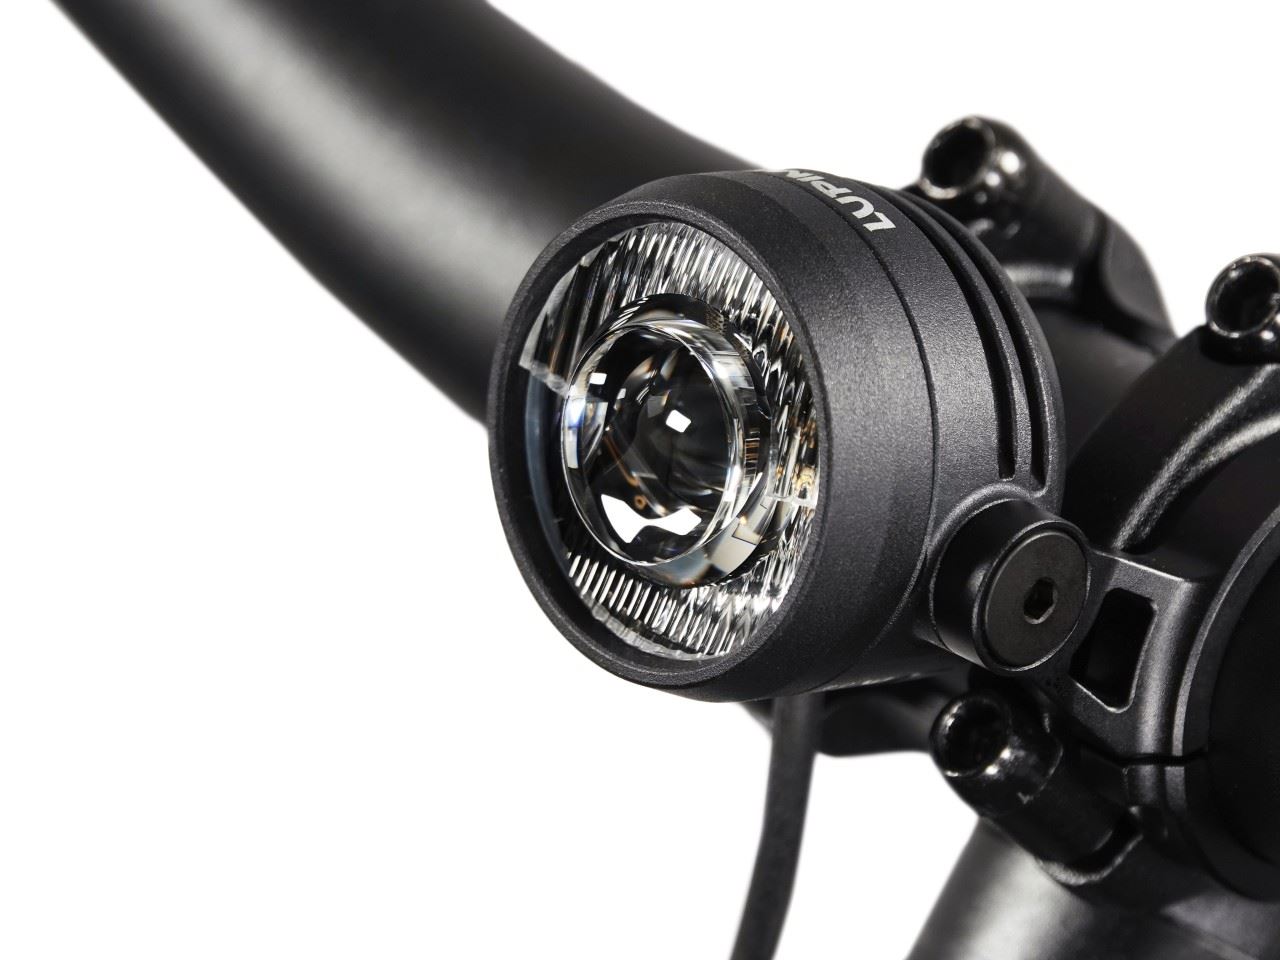 Produktbild von Lupine SL Nano für E-Bikes mit Shimano Motor, E-Bike Beleuchtung mit 900 Lumen Fernlicht, Lenkerhalter 31,8mm + Kabelfernbedienung